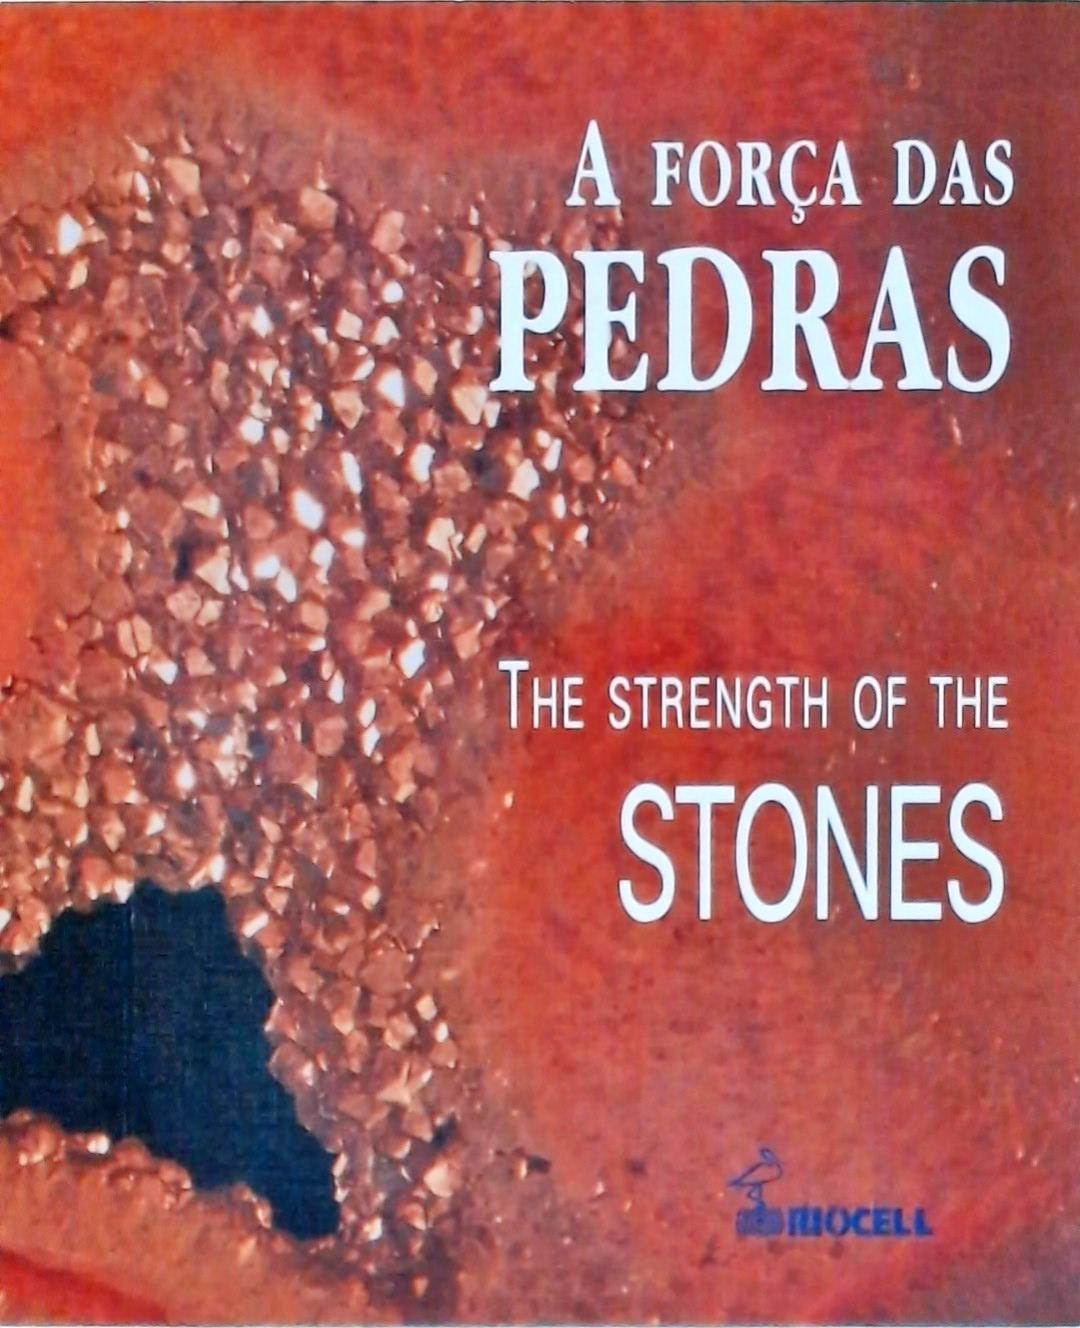 A Força das Pedras - The Strength of the Stones